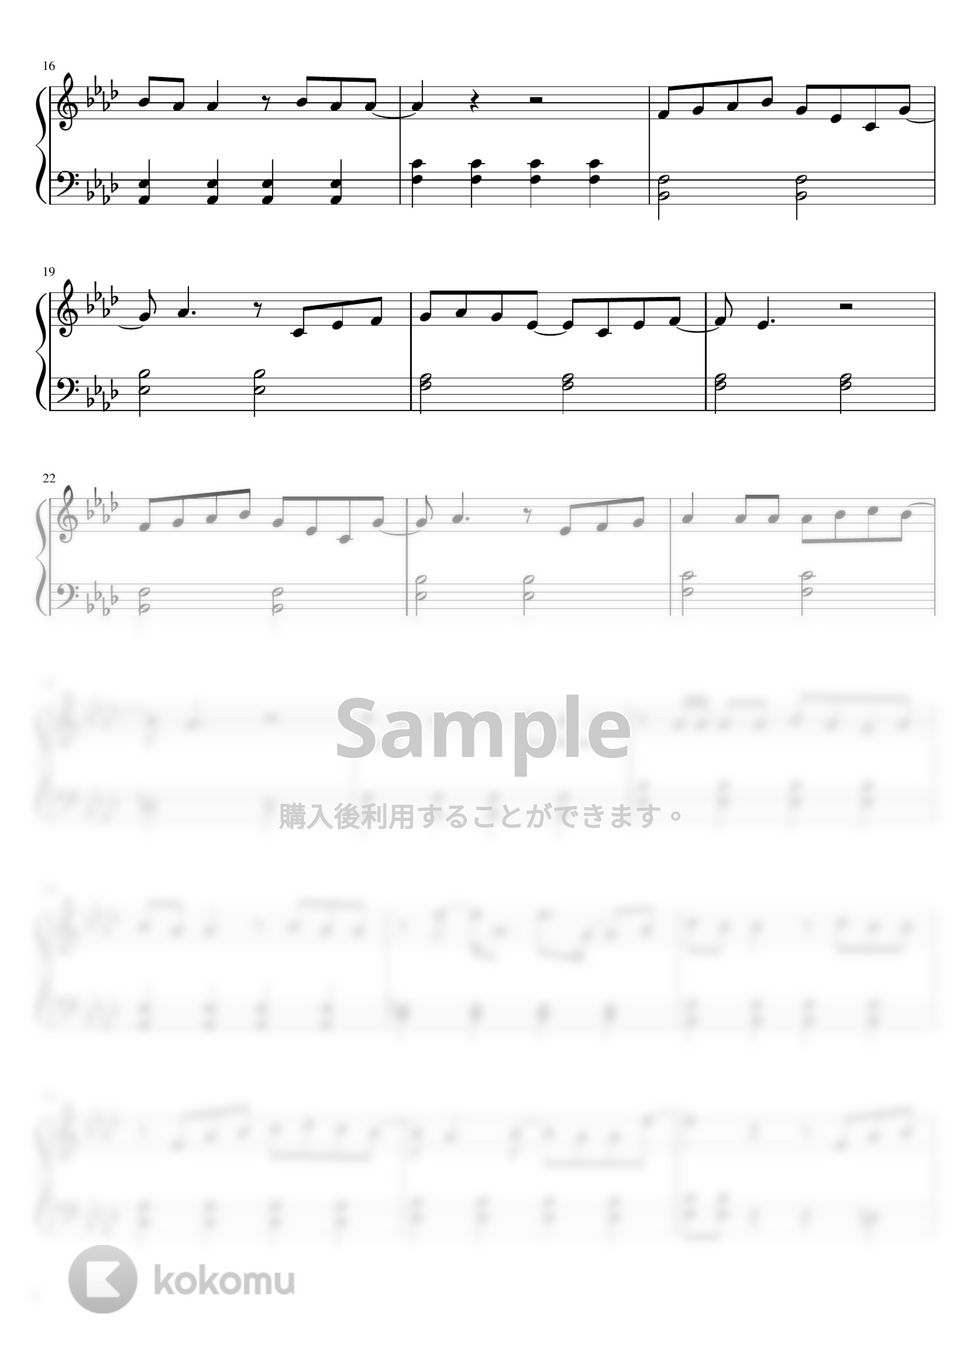 緑黄色社会 - Mela! (ピアノソロ初級) by pianon